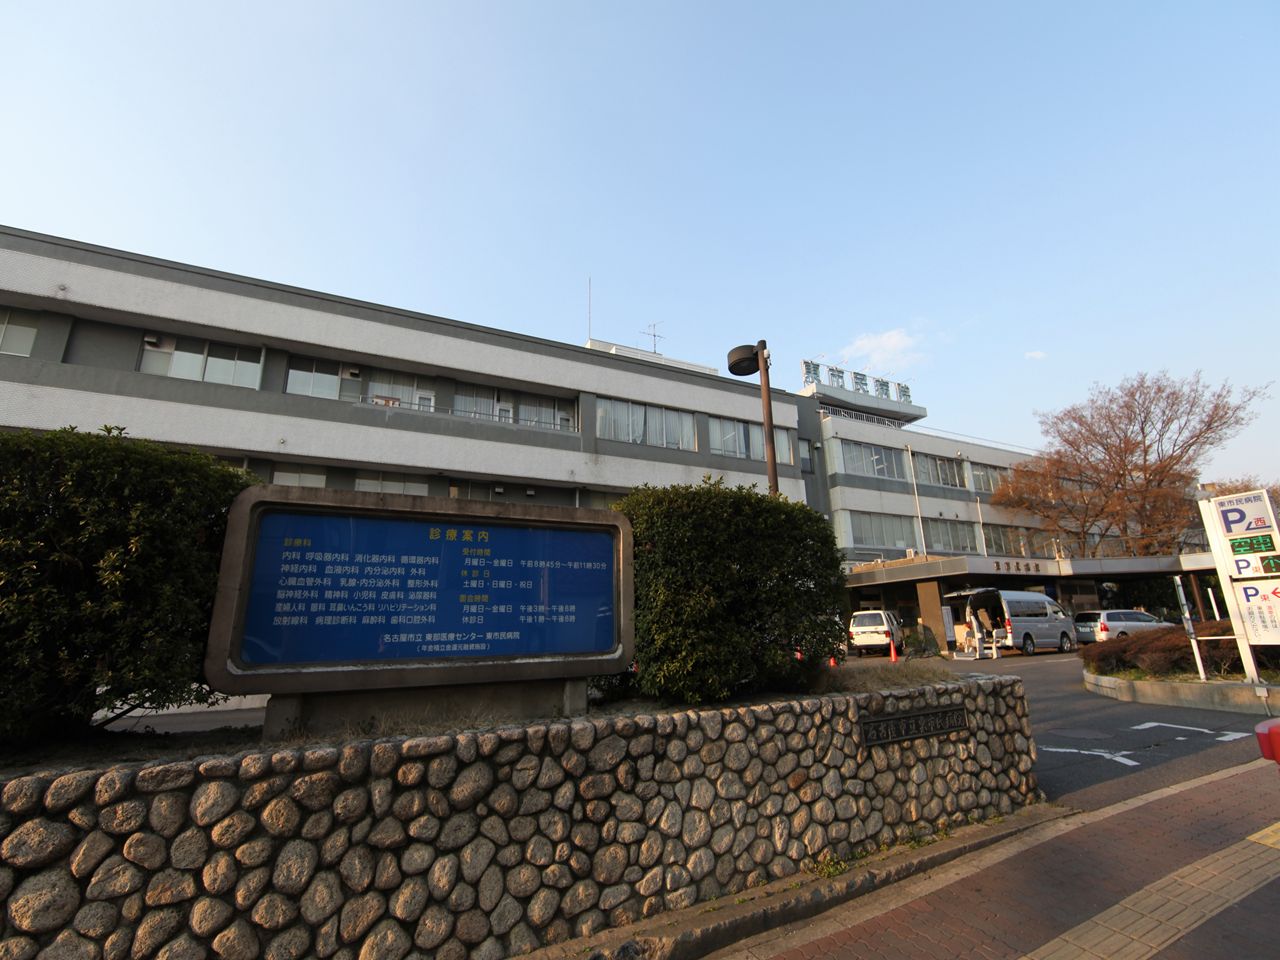 Hospital. 1400m to Nagoya Municipal Eastern Medical Center (General Hospital) (hospital)